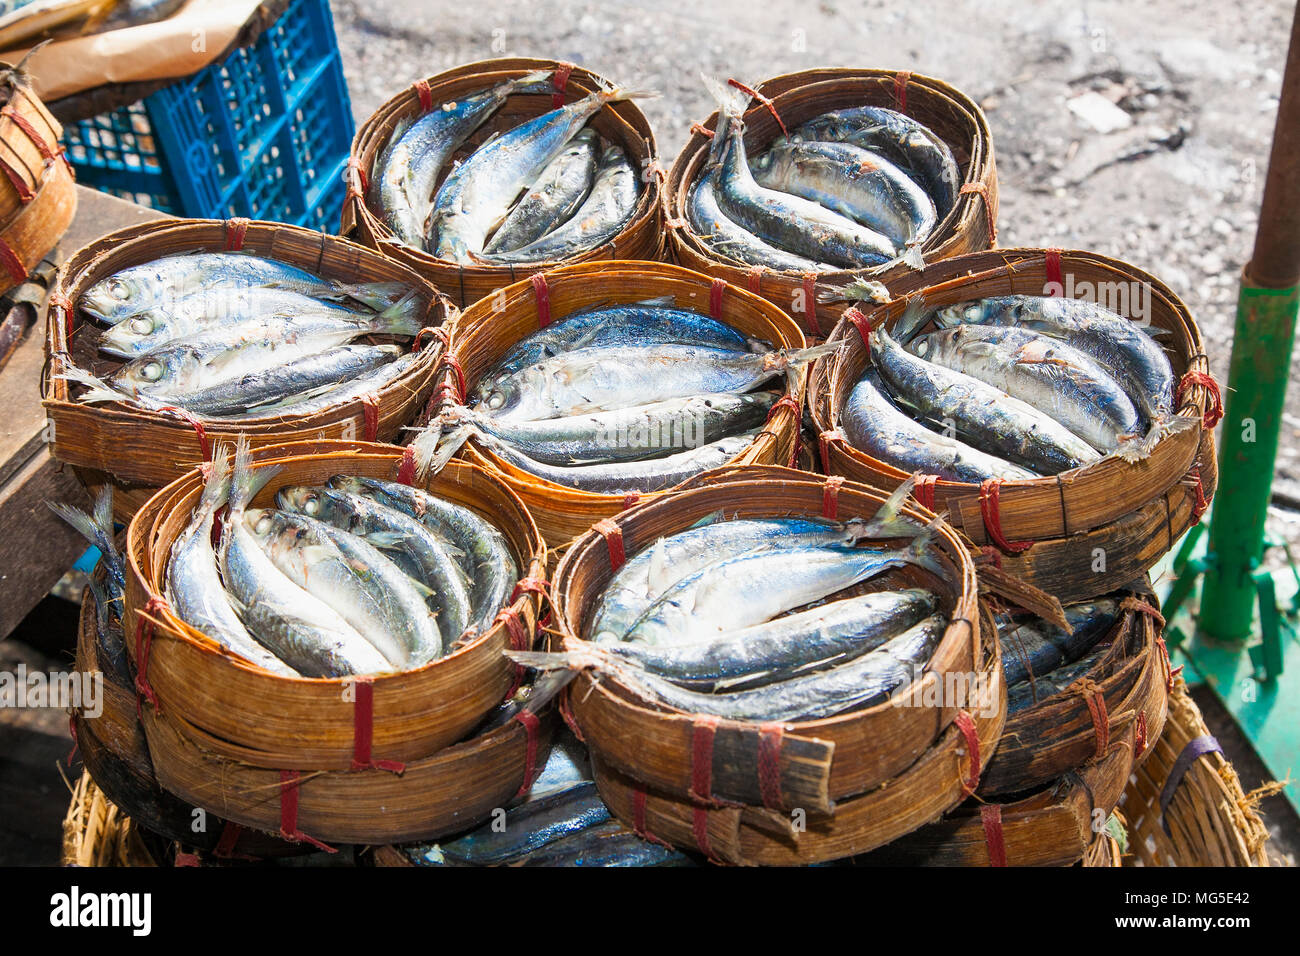 Makrele Fisch in Bambus Korb am Markt können Sie es in jedem Markt finden, wenn Sie in Thailand sind. Stockfoto